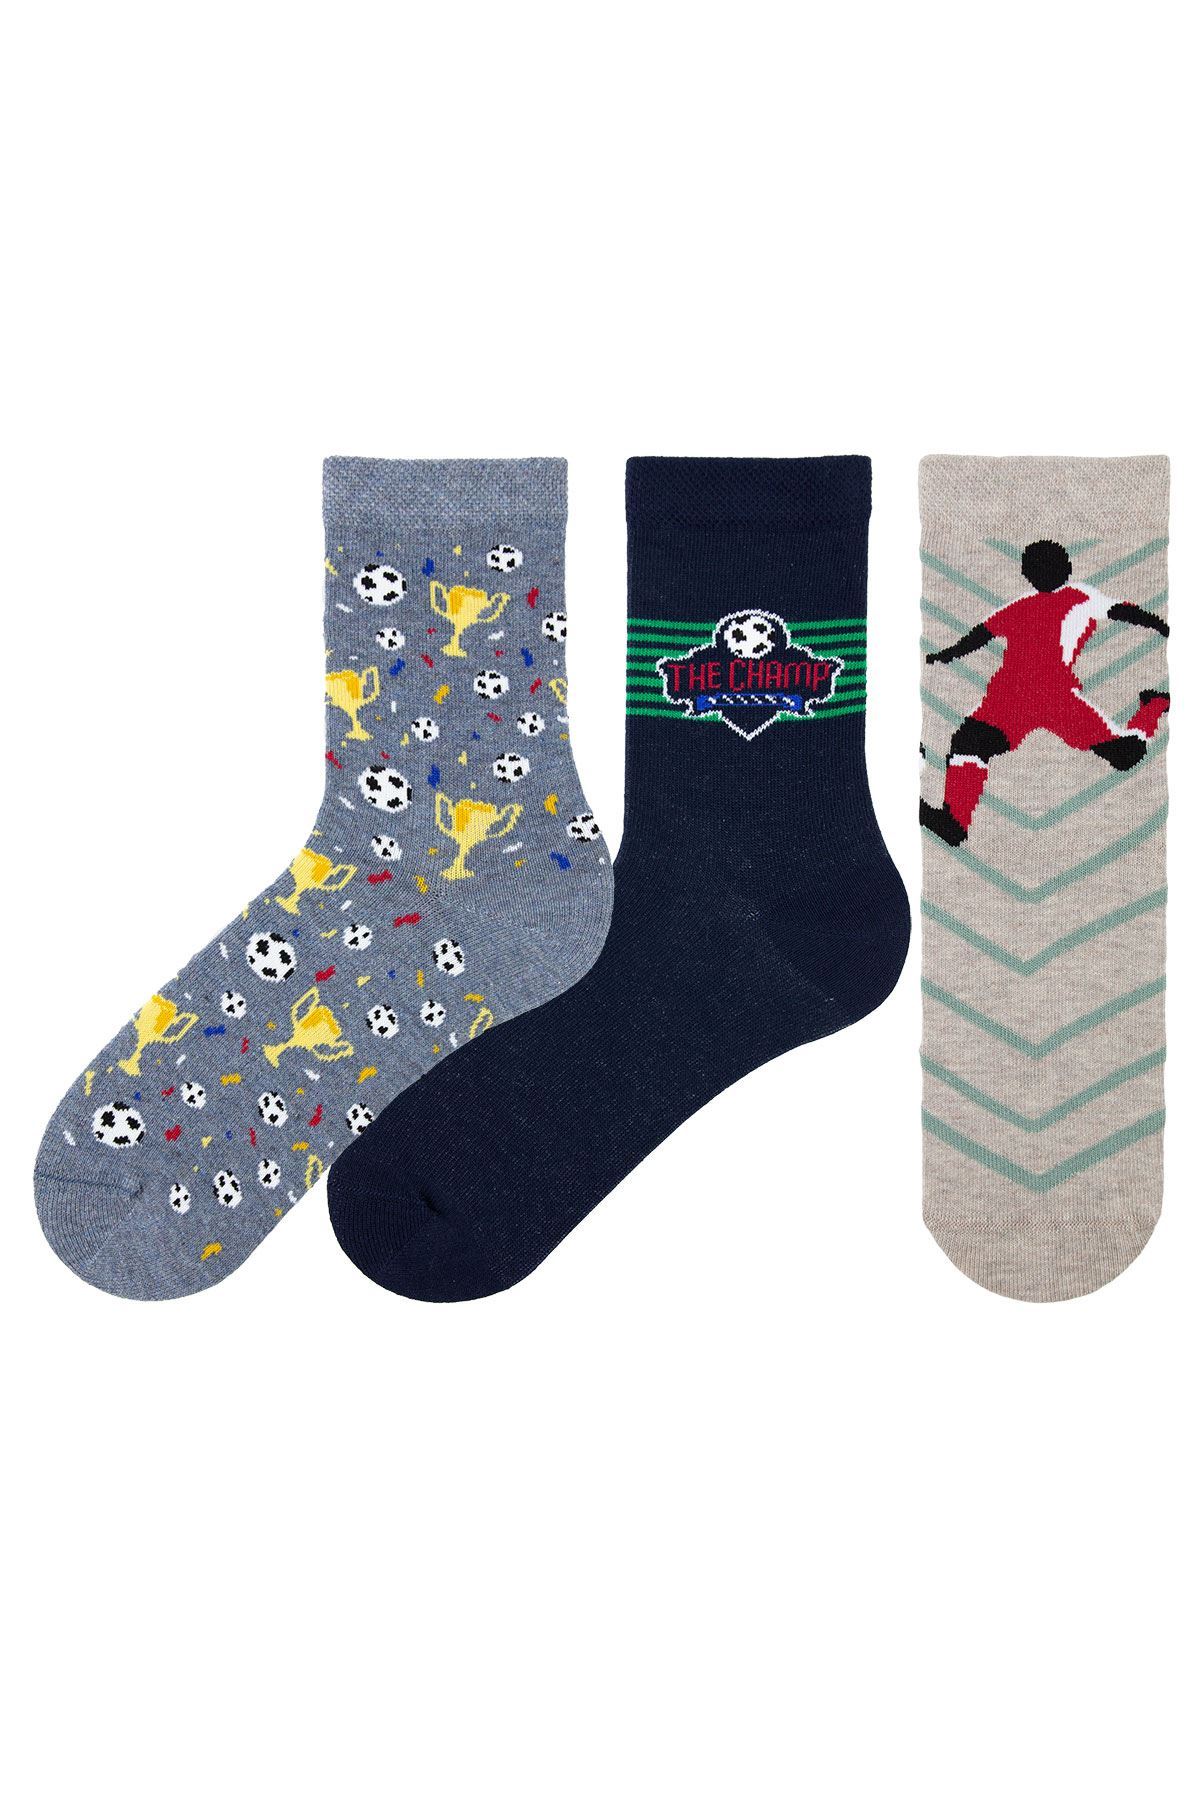 FOOTBALL THEMED BOYS SOCKS | Buy Branded Wholesale Socks Online At ...